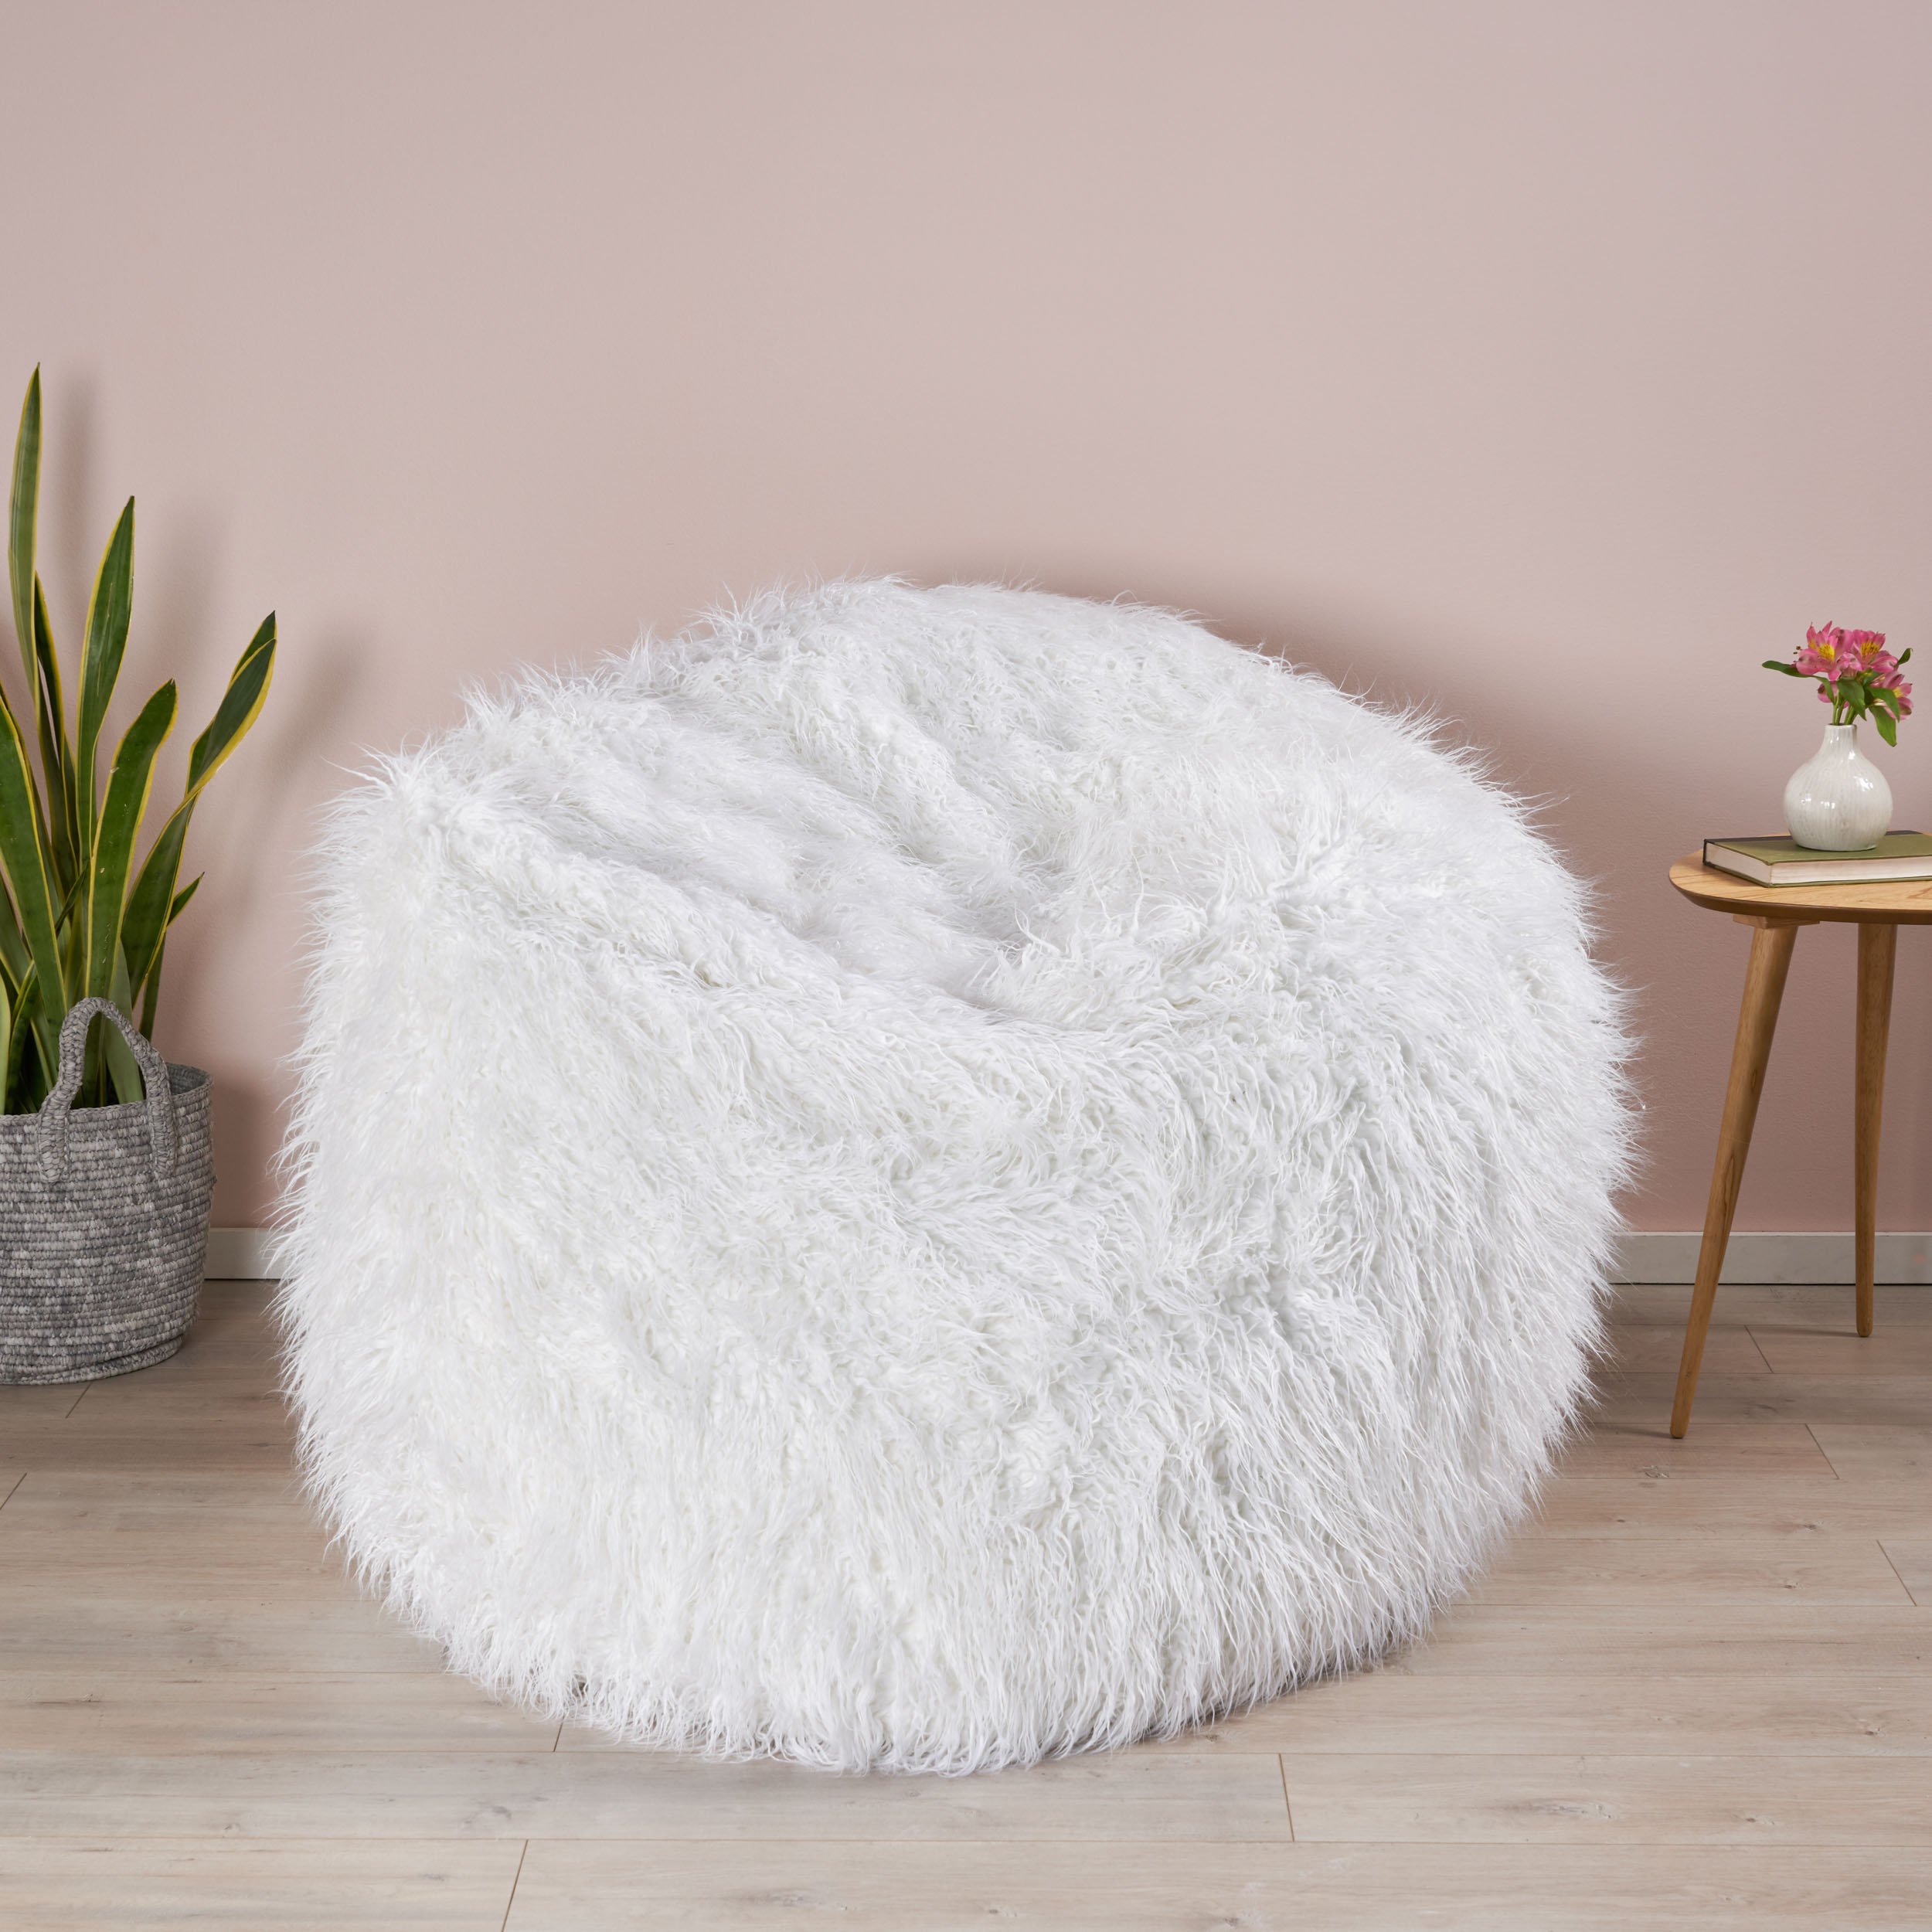 Lycus Faux Fur Bean Bag Chair - White